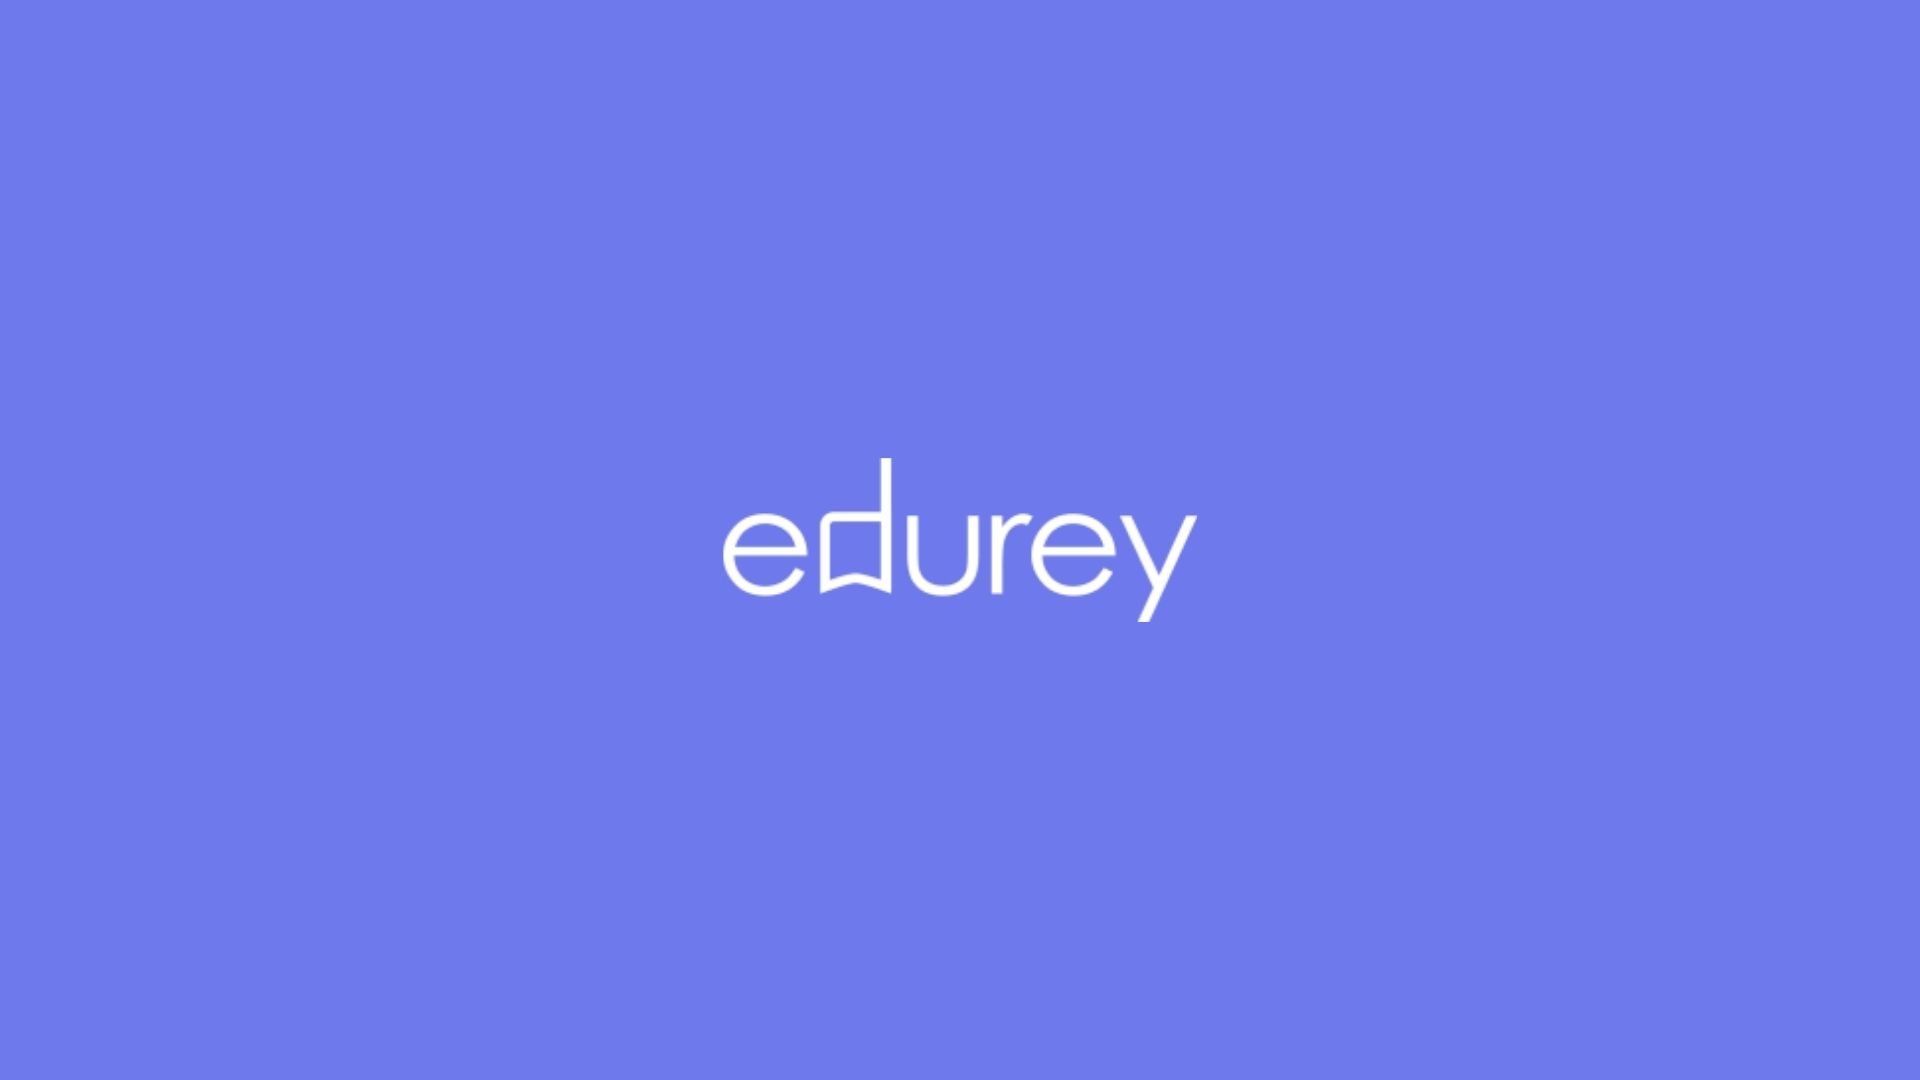 Edurey